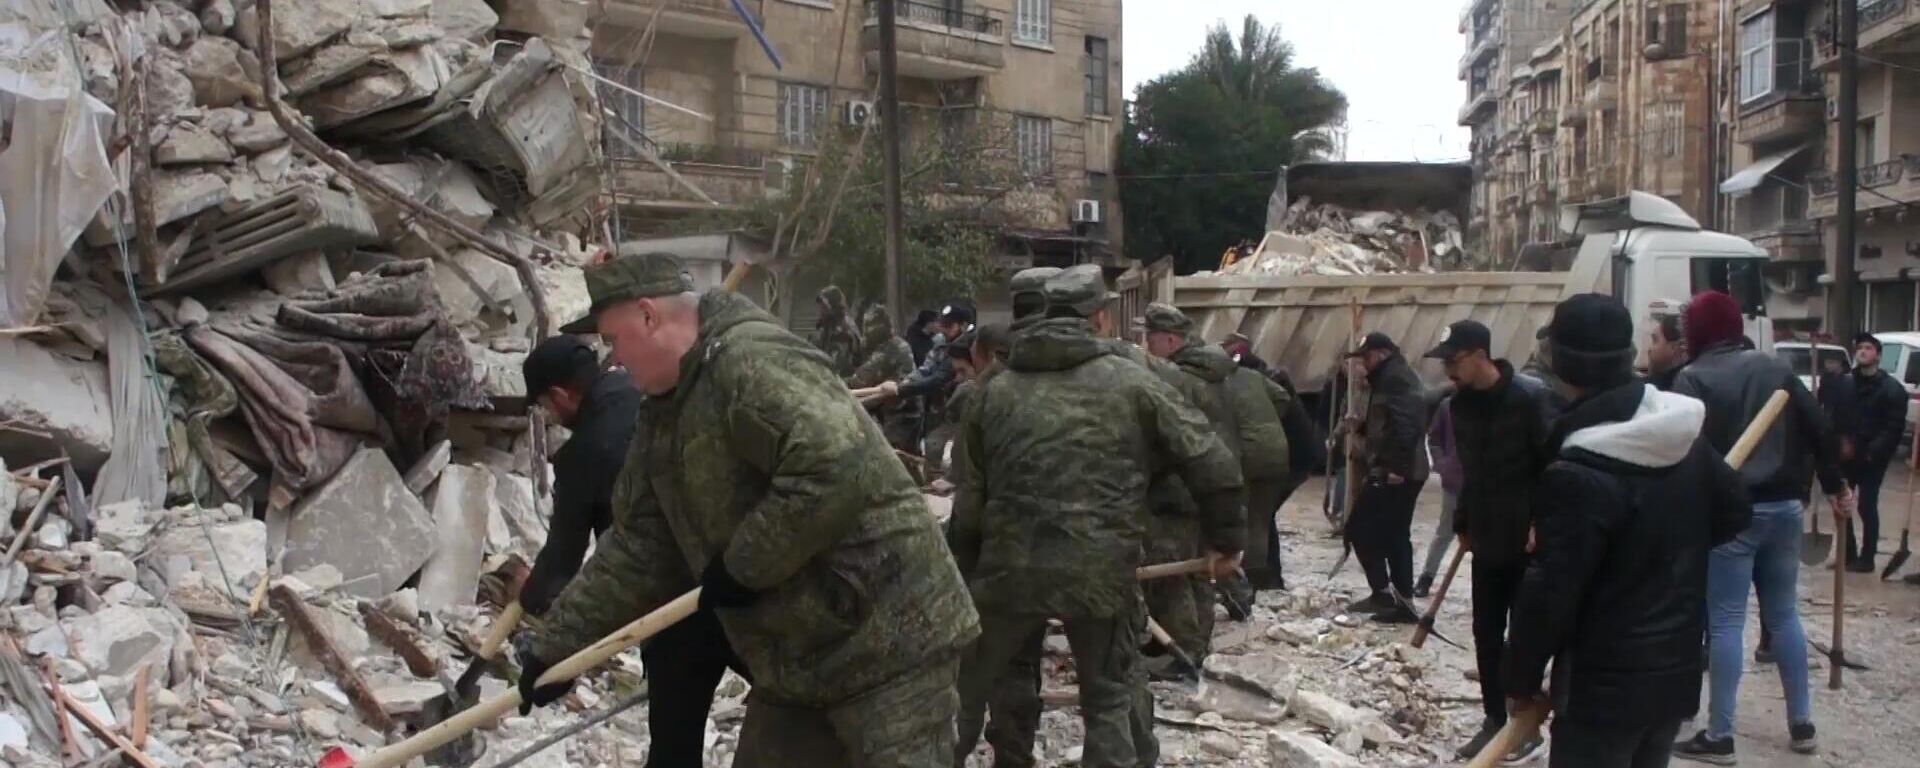 Los militares rusos ayudan a eliminar las consecuencias de los sismos fuertes en Siria - Sputnik Mundo, 1920, 07.02.2023